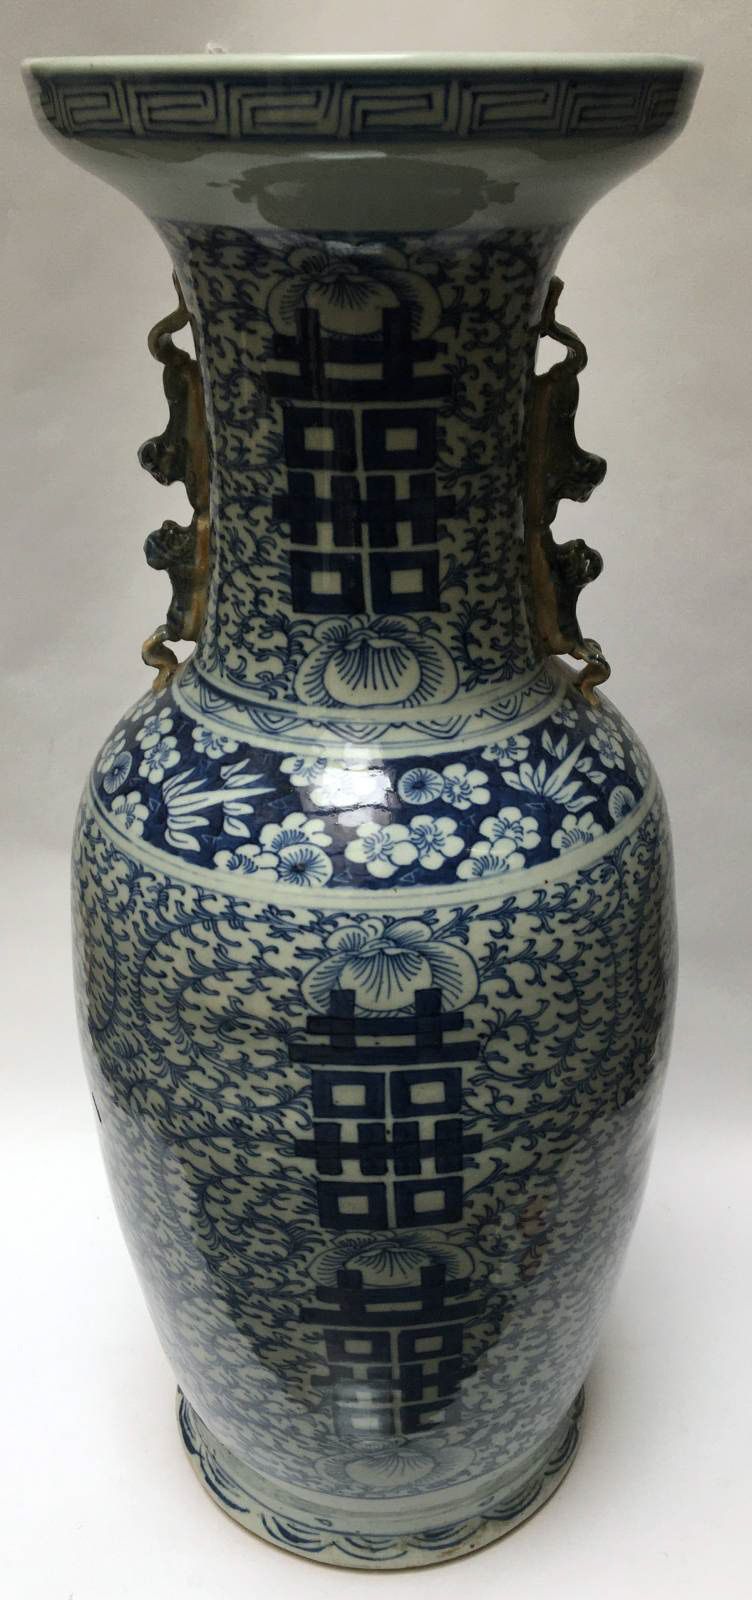 Null 饰有表意文字的青花柱形花瓶。

中国，20世纪初。

高：60厘米